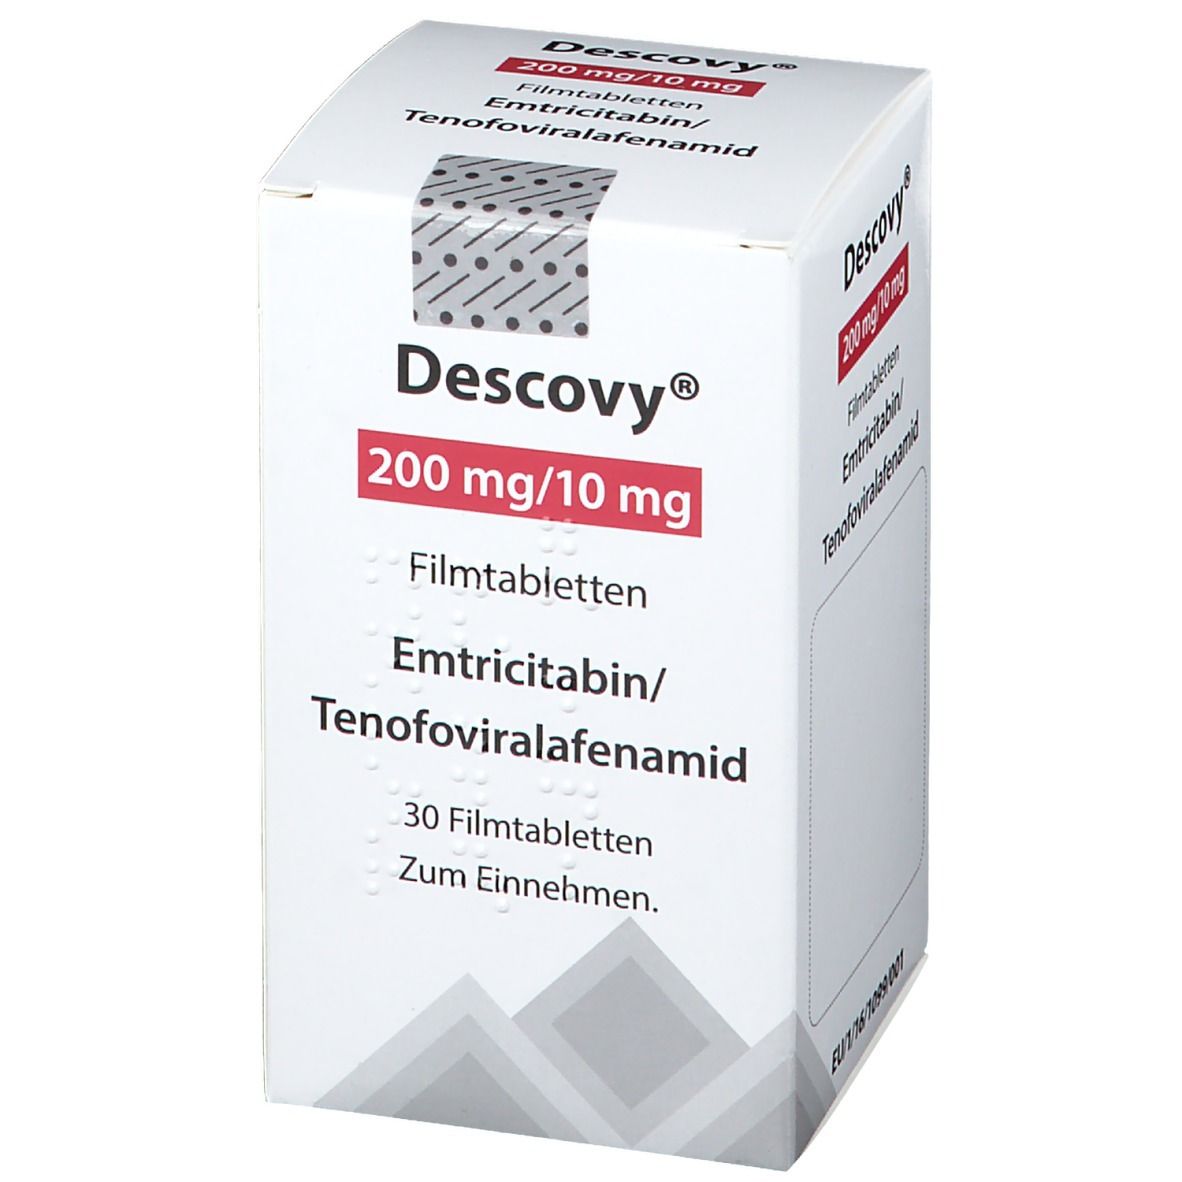 Desvovy® 200 mg/100 mg